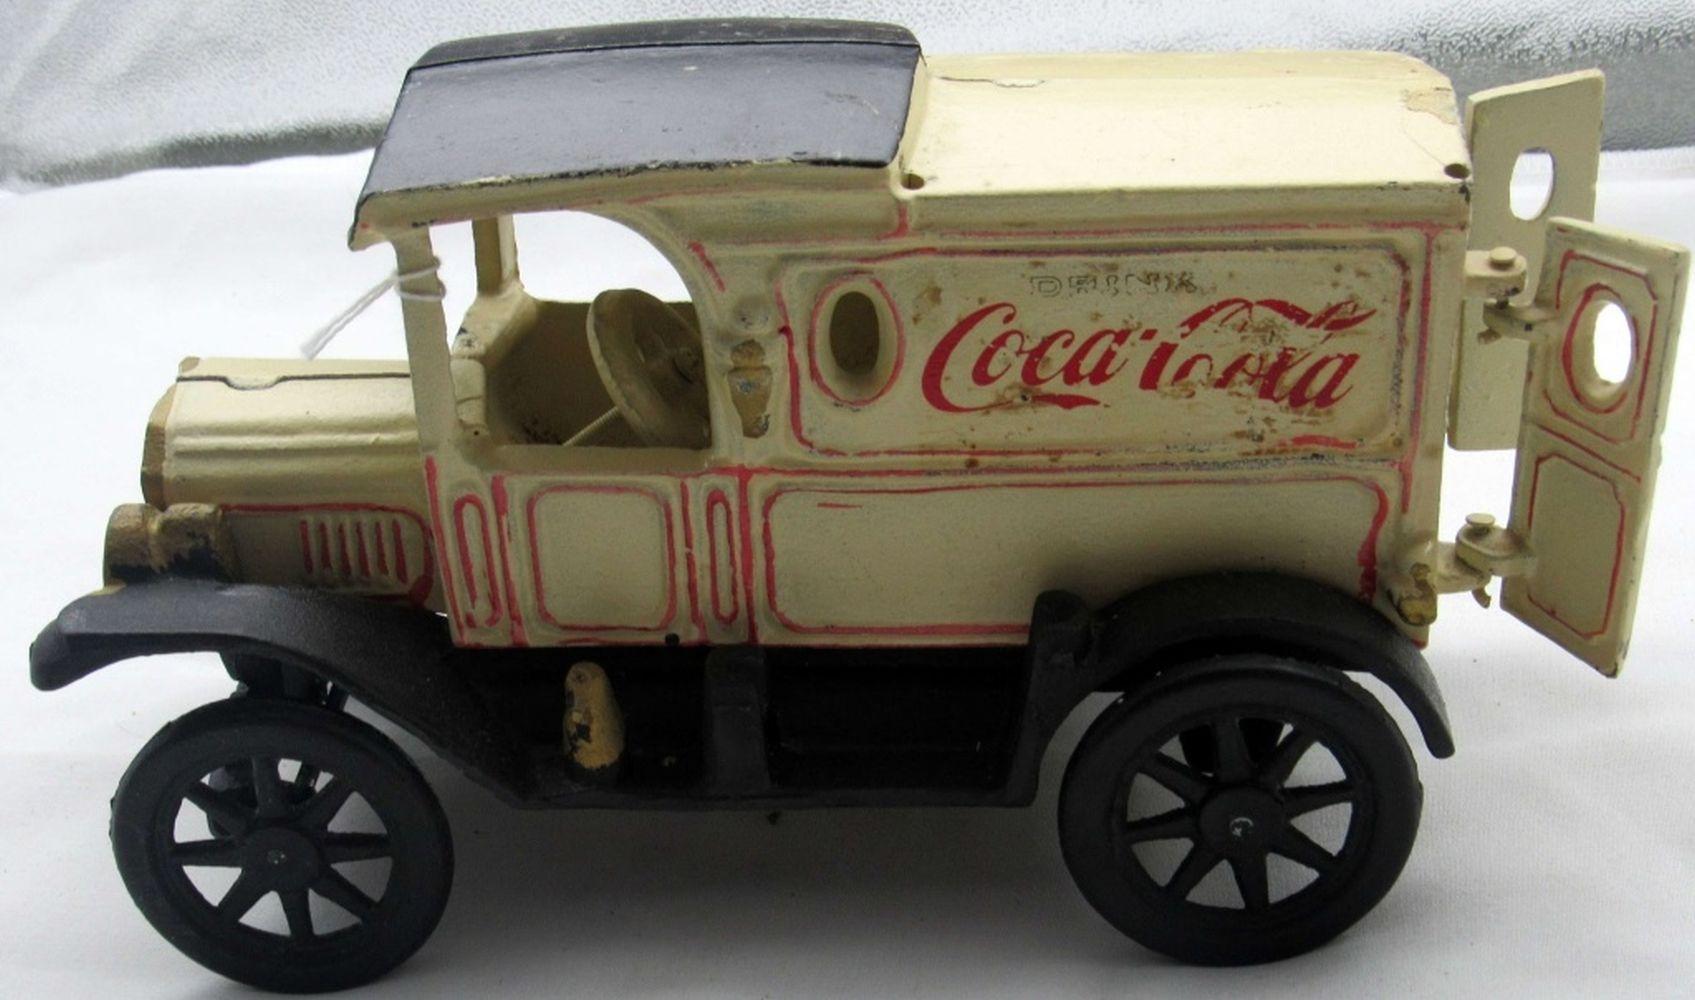 Vintage Cast Iron "DRINK COCA COLA" Delivery